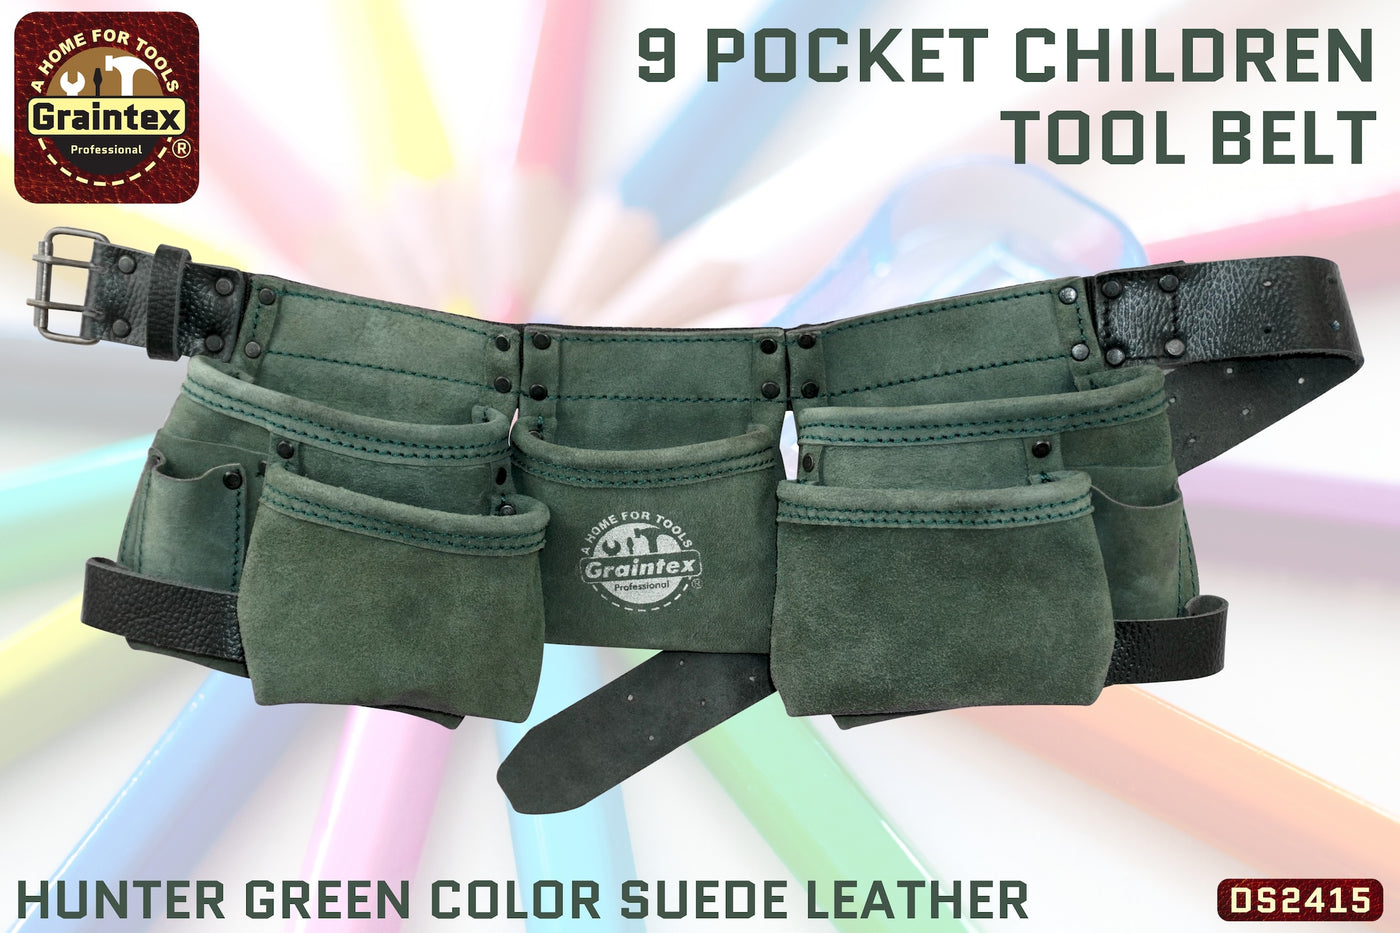 DS2415 :: 9 Pocket Children Tool Belt Hunter Green Color Suede Leather